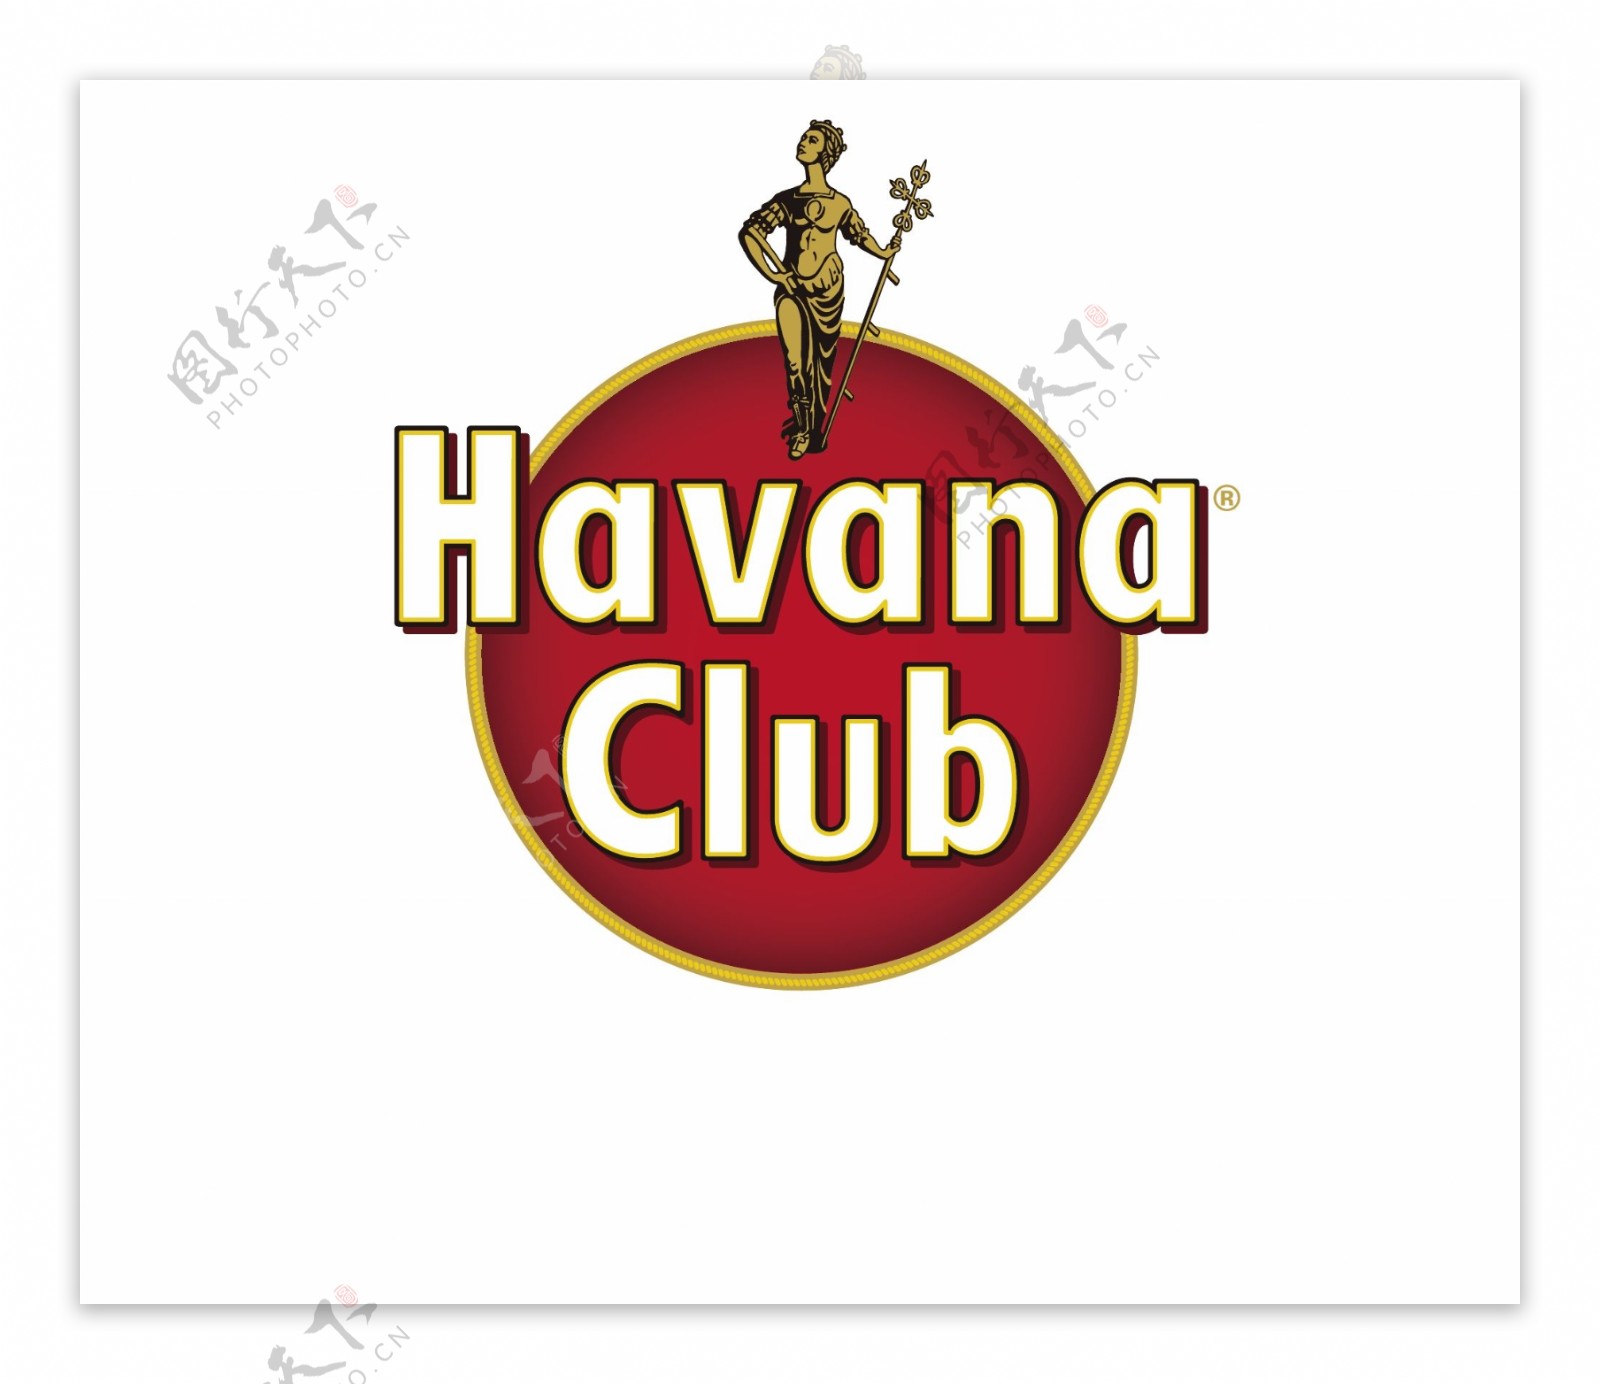 havanaclub哈瓦那俱乐部矢量logo图片